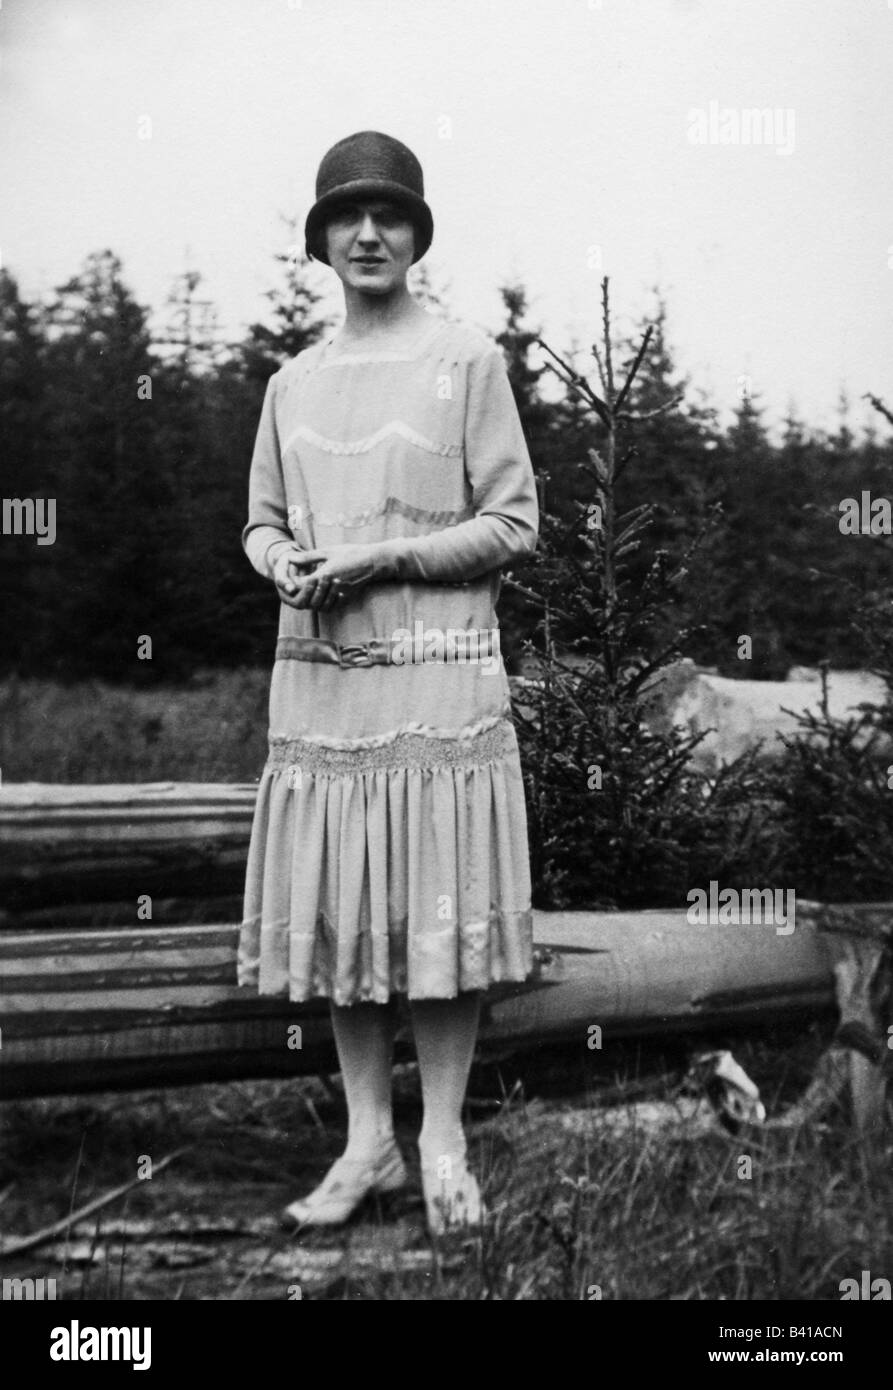 Femme des années 1920 Banque d'images noir et blanc - Alamy